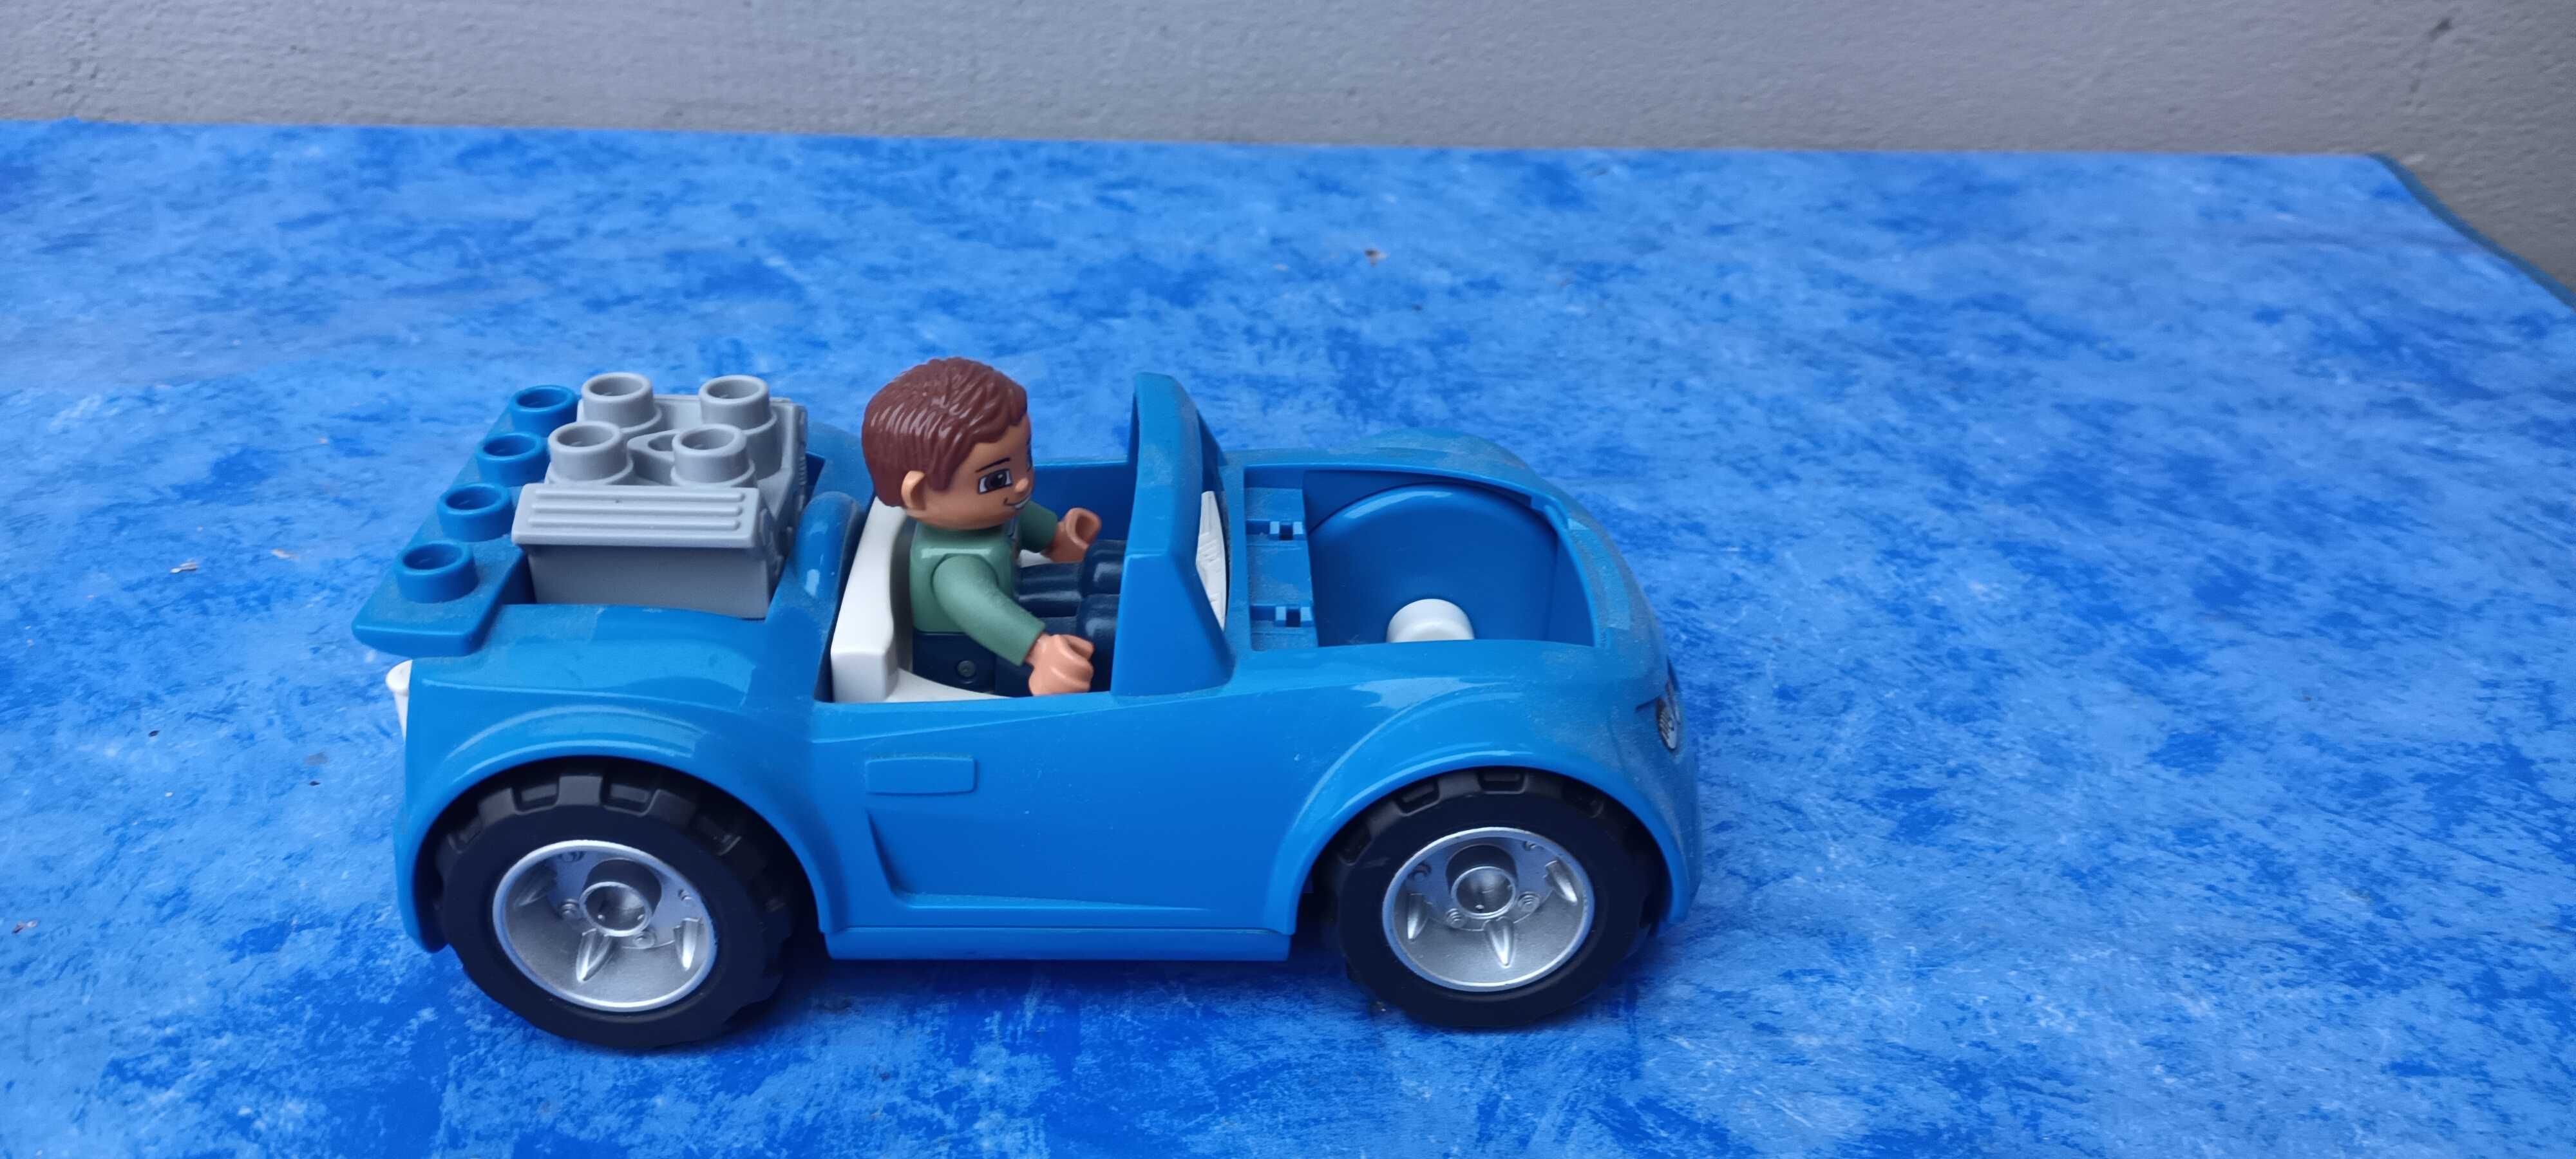 Lego Duplo | Blue MG 2509 masinuta sport | 20*10*7 cm